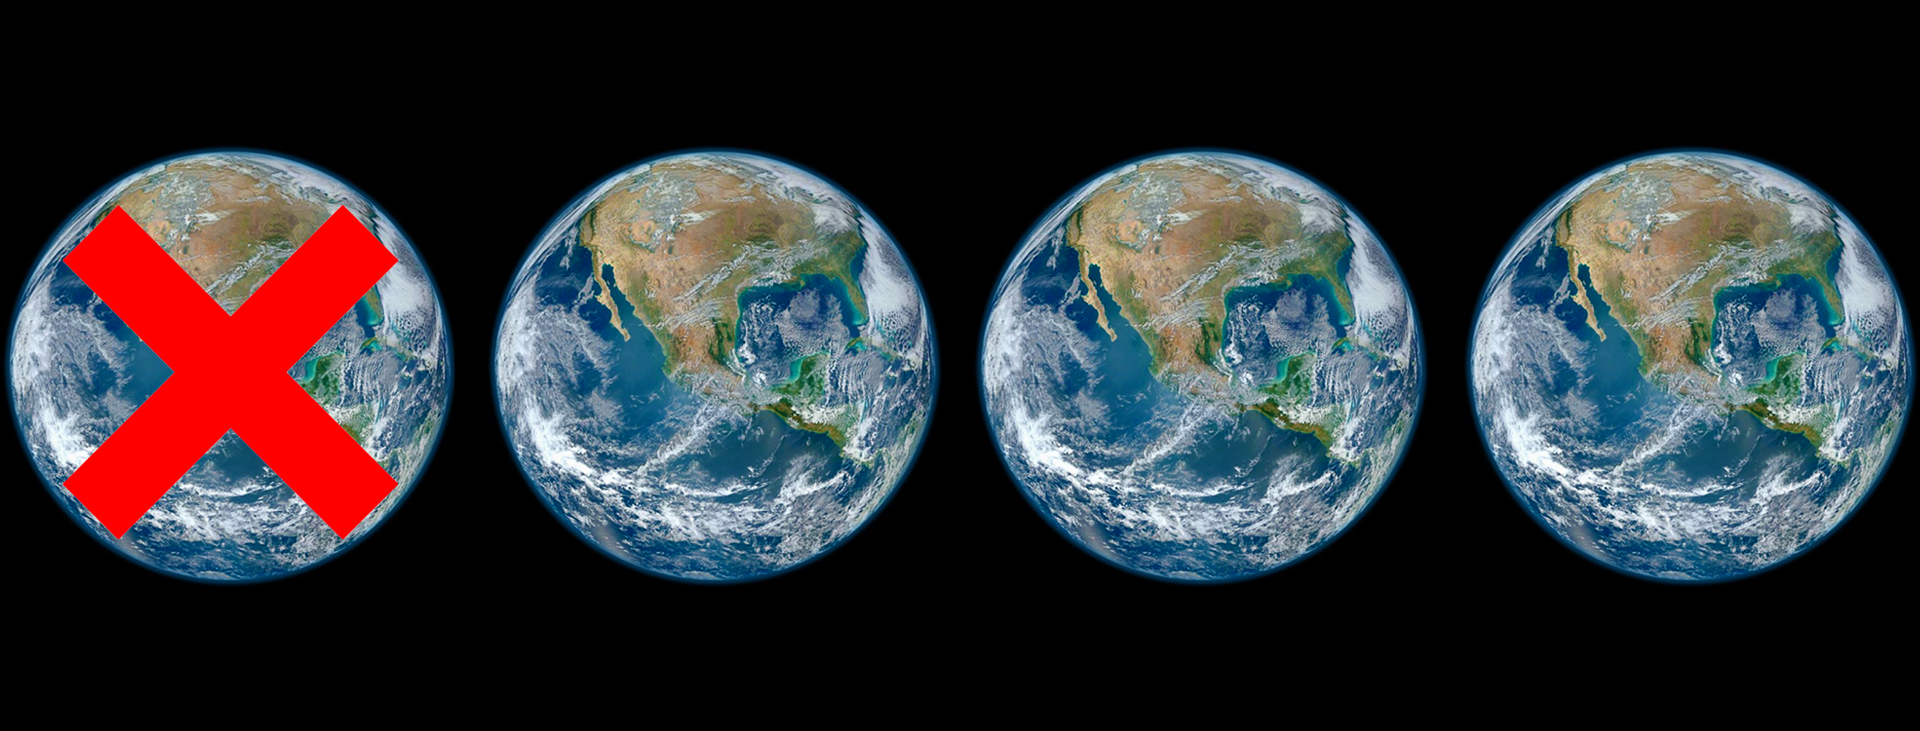 De rooftocht op de planeet: we komen 2.6 aarde tekort